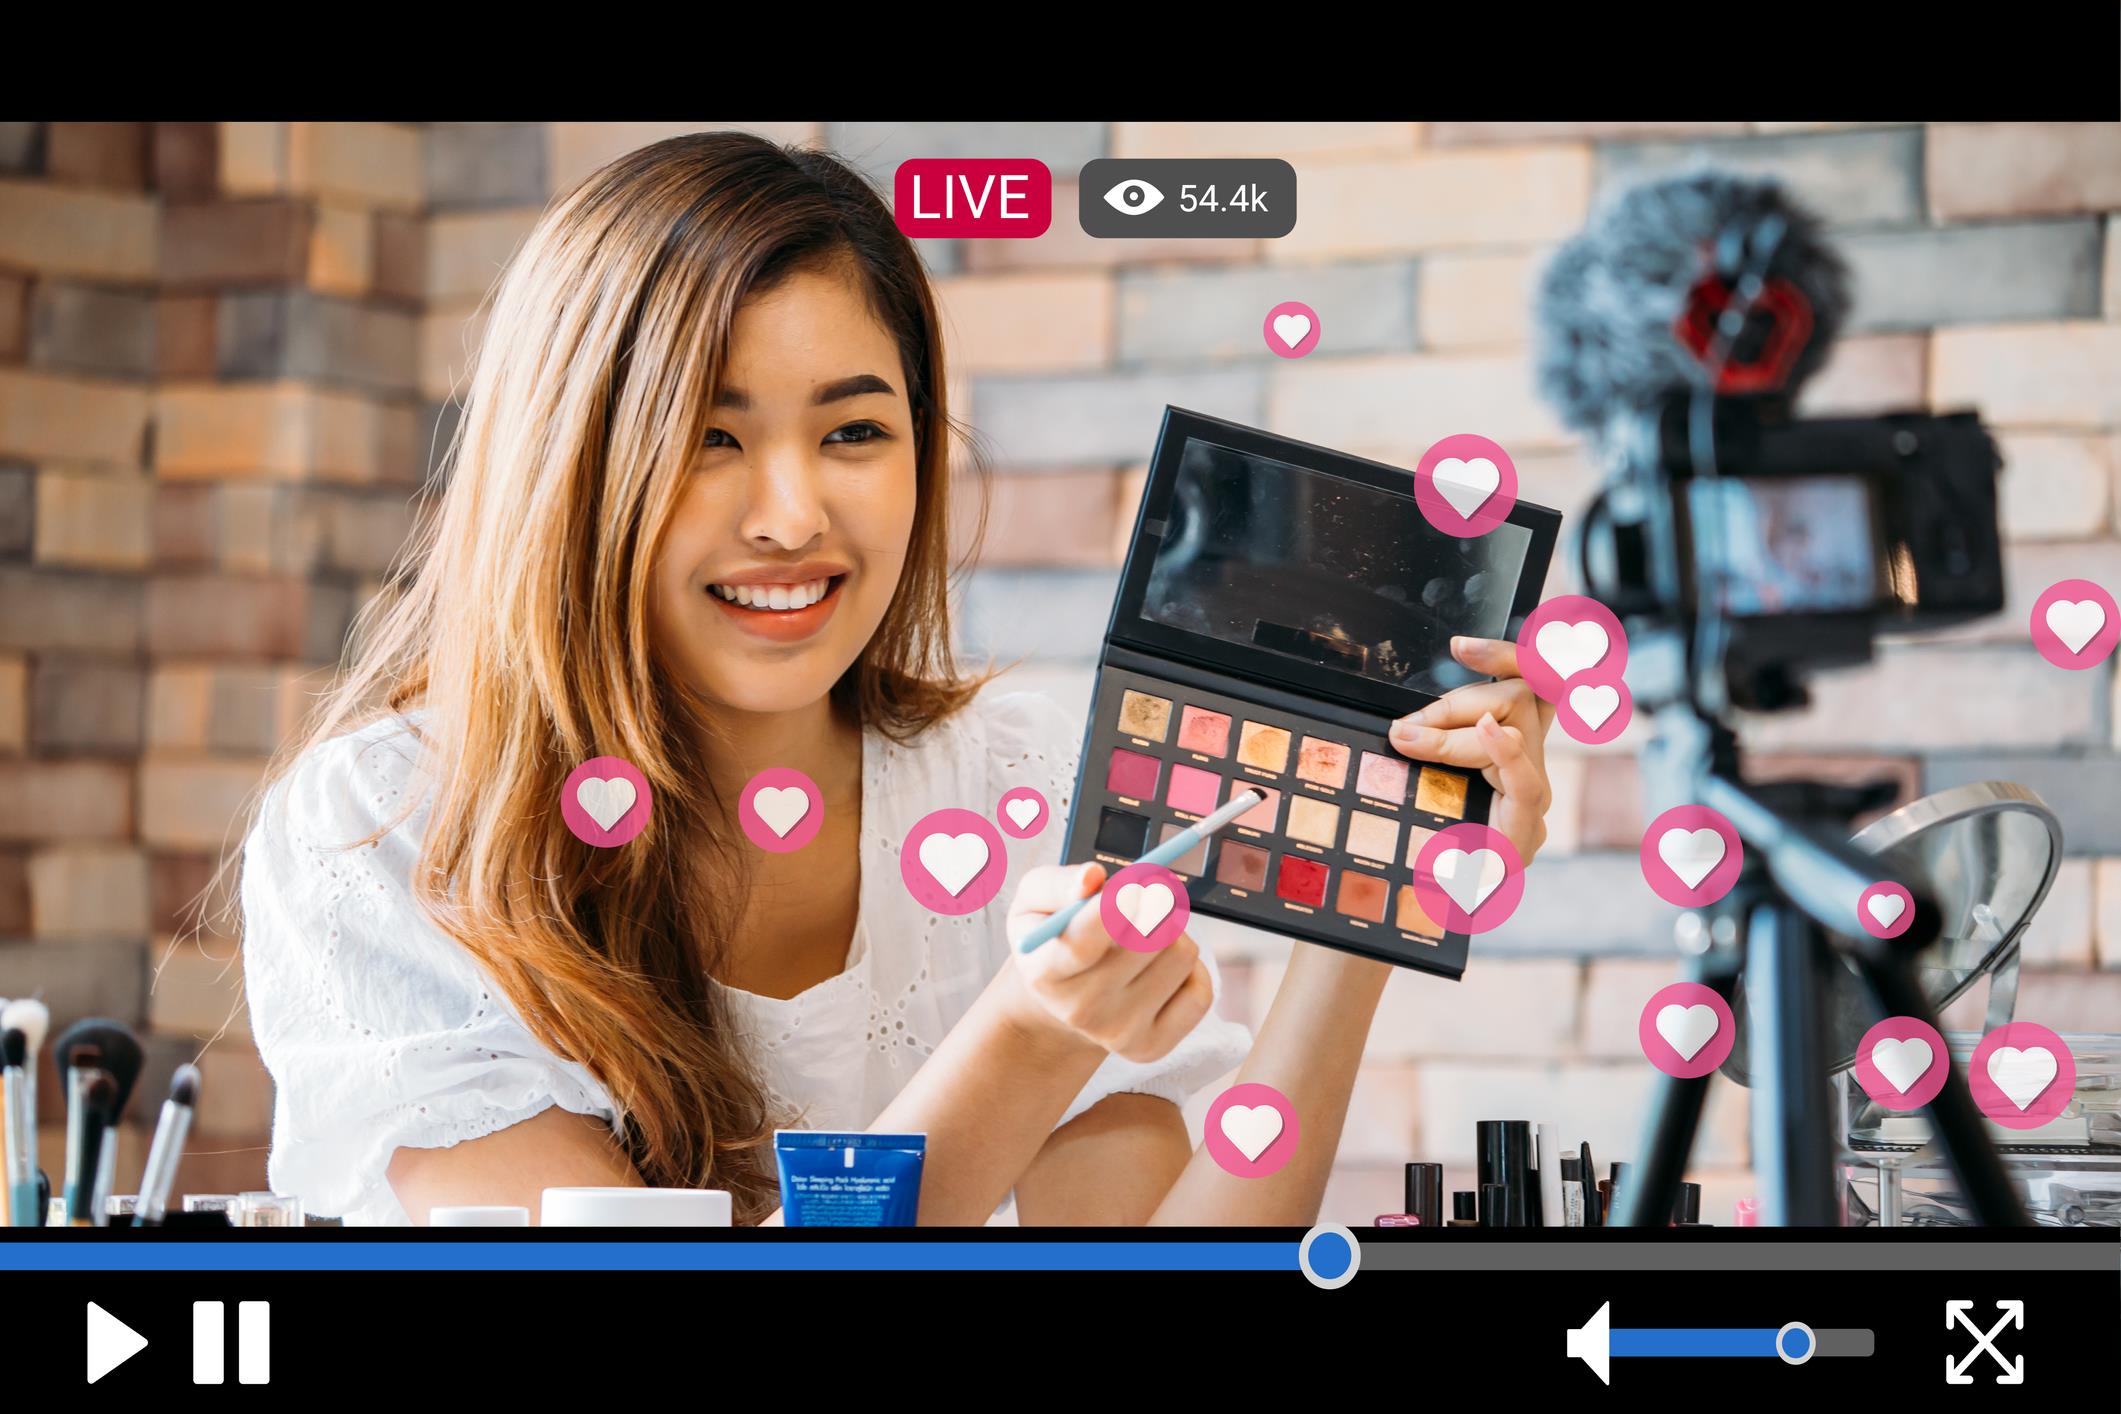 Mulher asiática mostrando maquiagem para câmera